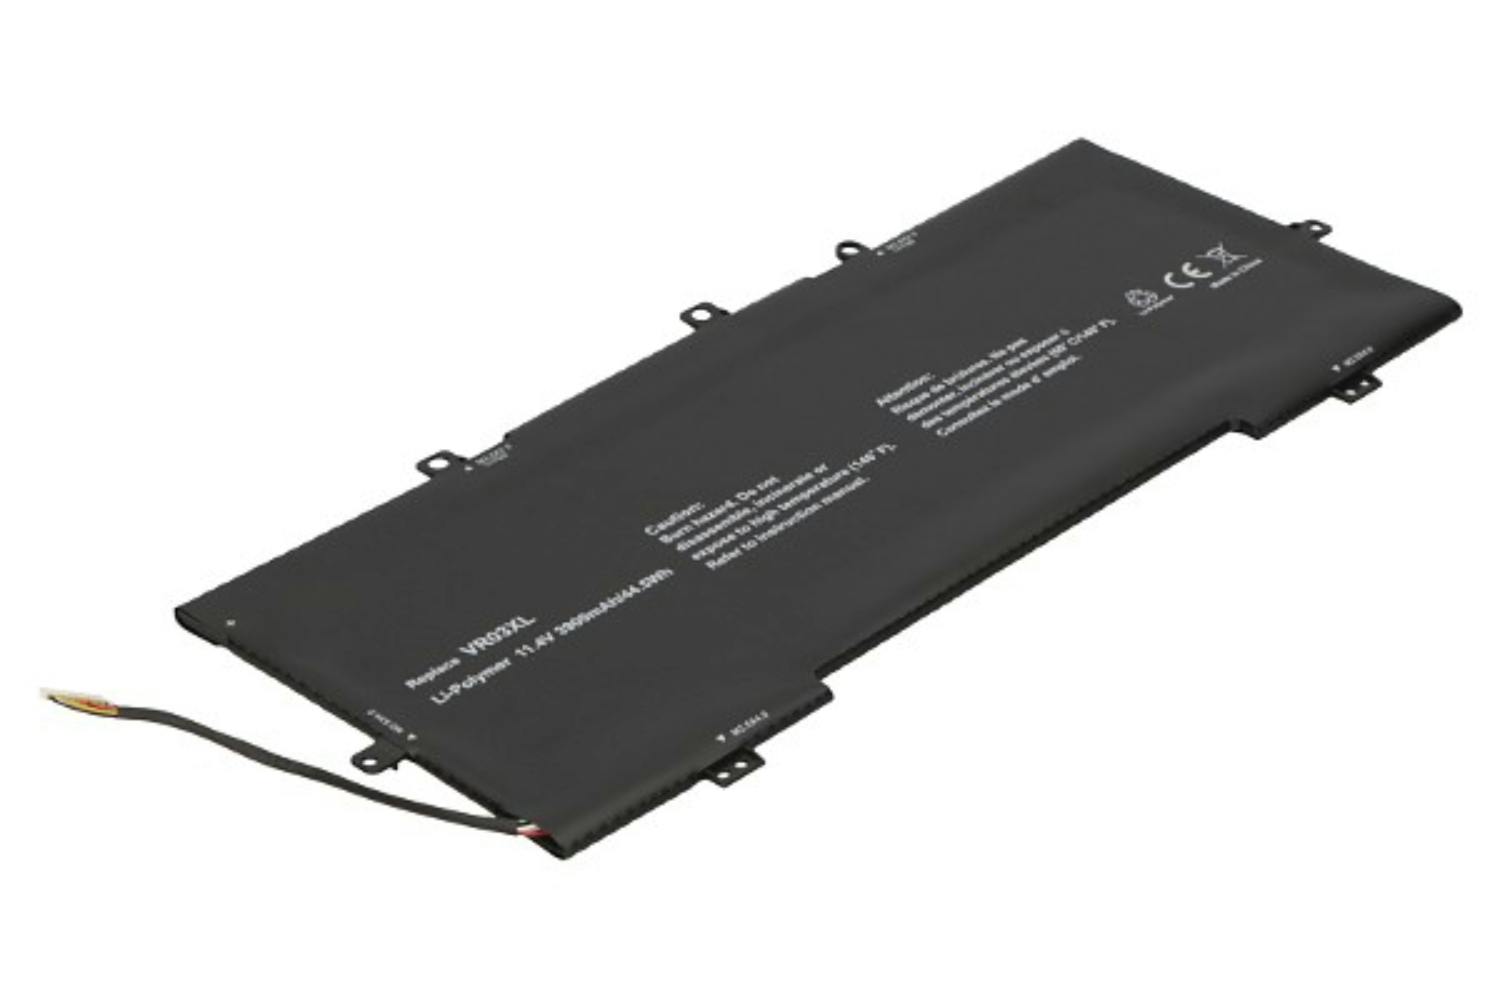 2-Power CBP3714A 3900mAh Main Battery Pack